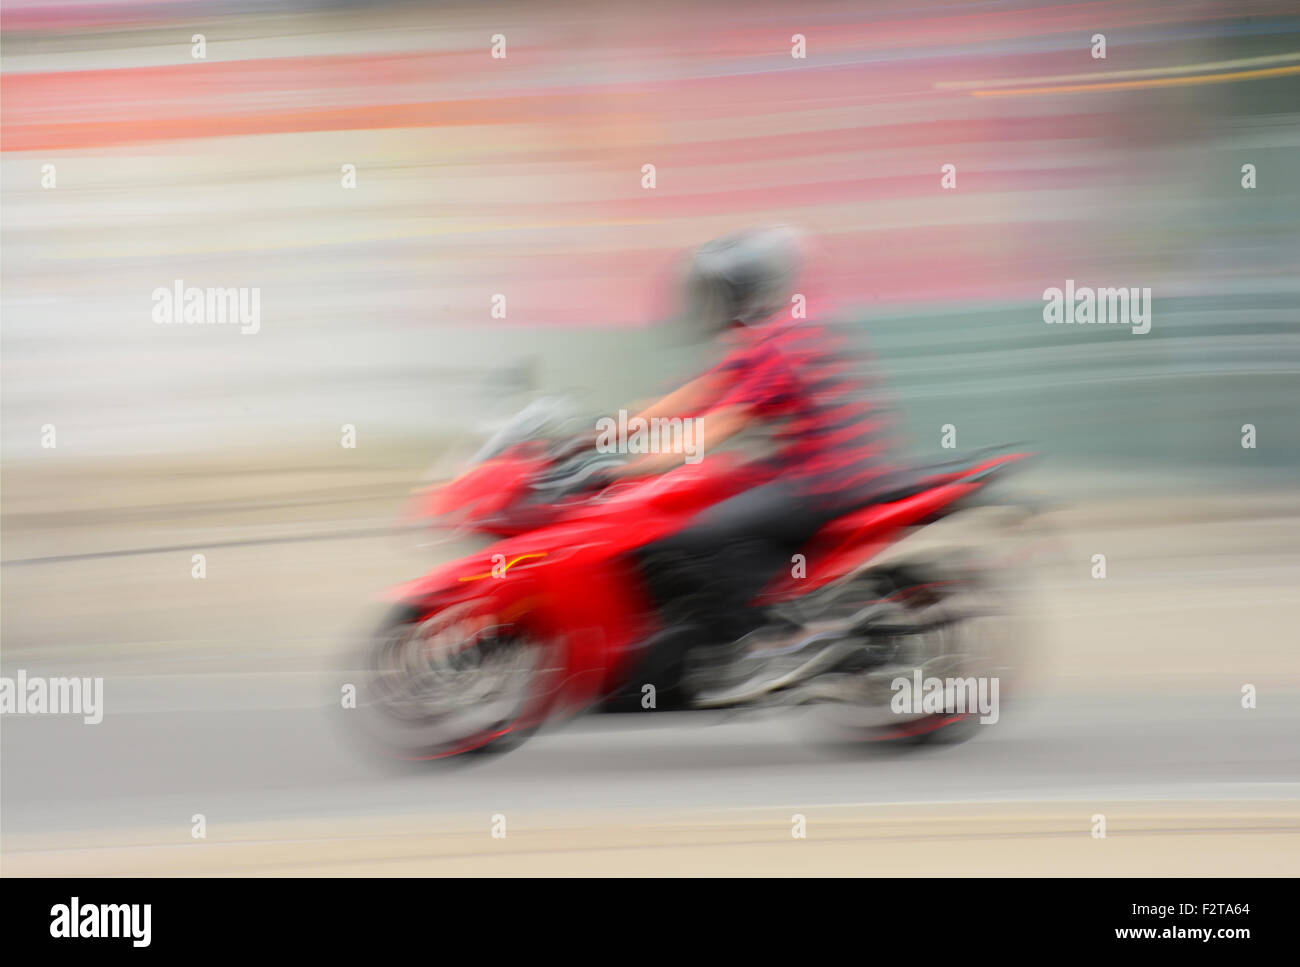 En moto blurred motion Banque D'Images